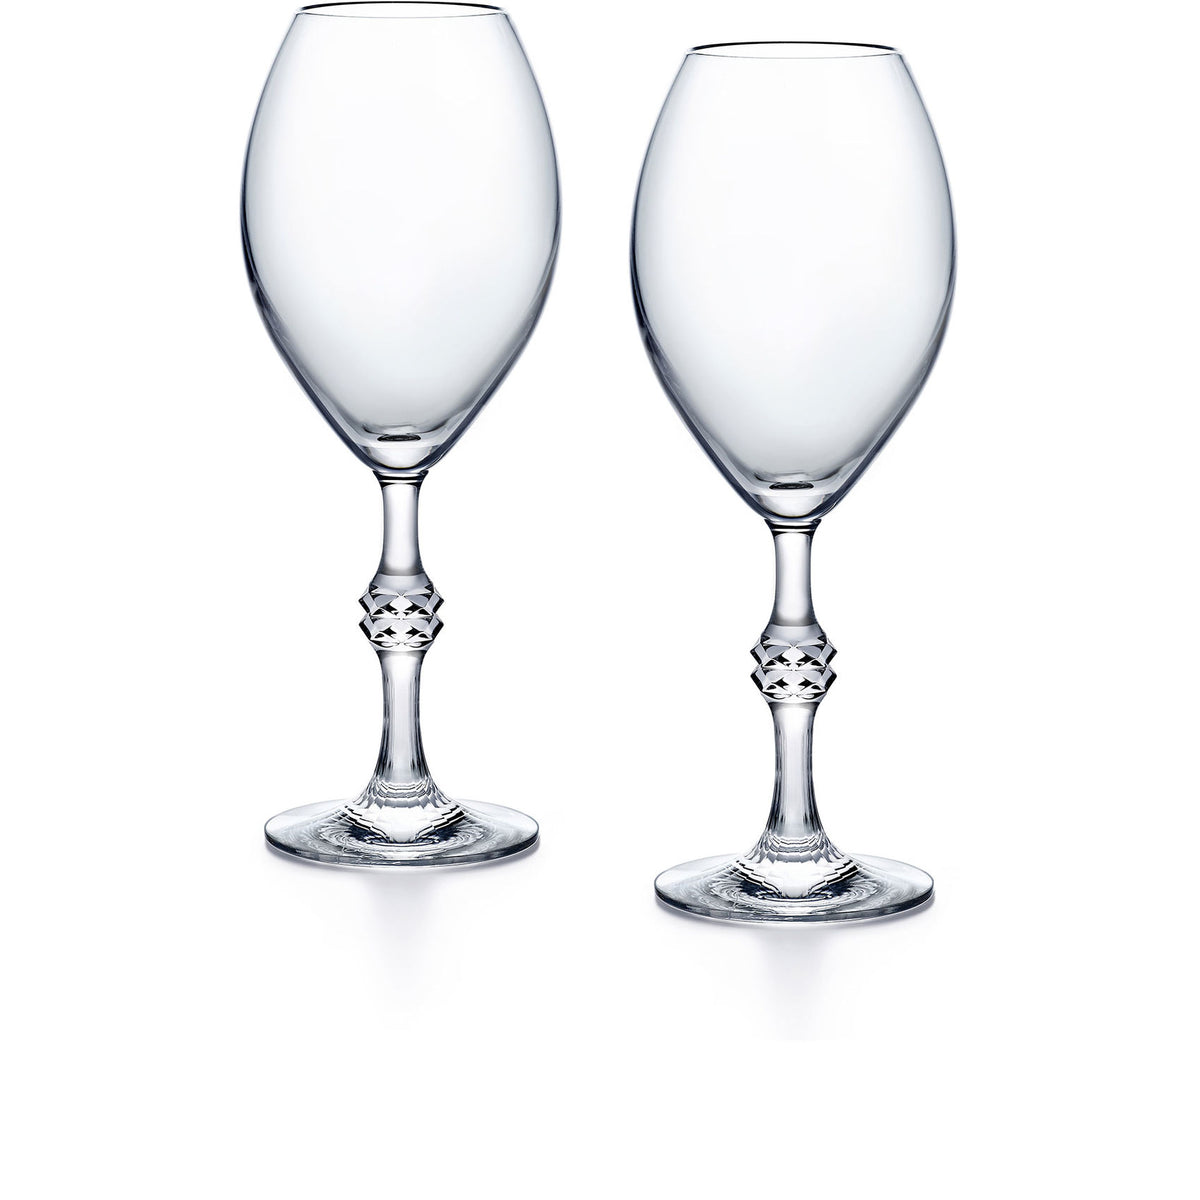 JCB Passion Champagne Glasses, Set of 2